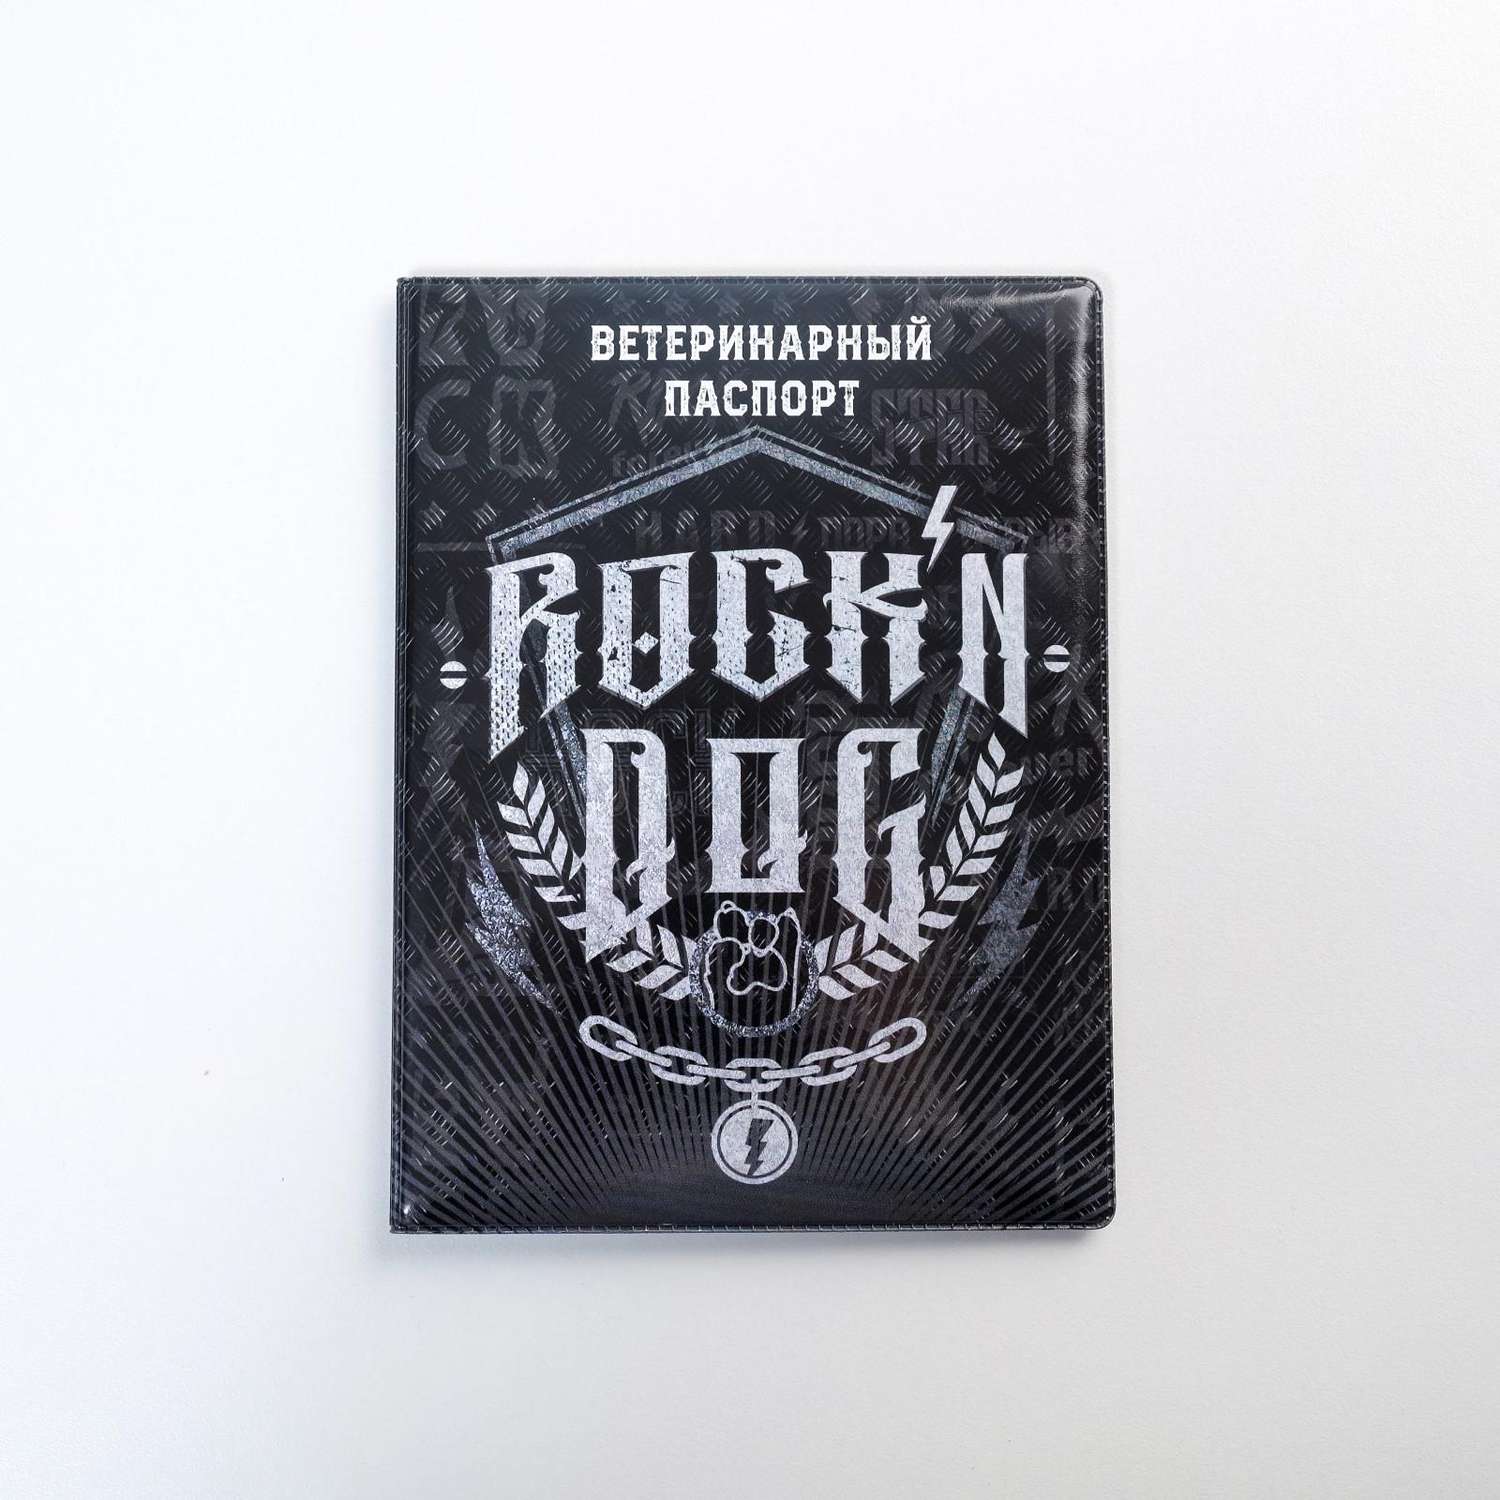 Обложка Пижон на ветеринарный паспорт «Rockn dog» - фото 1